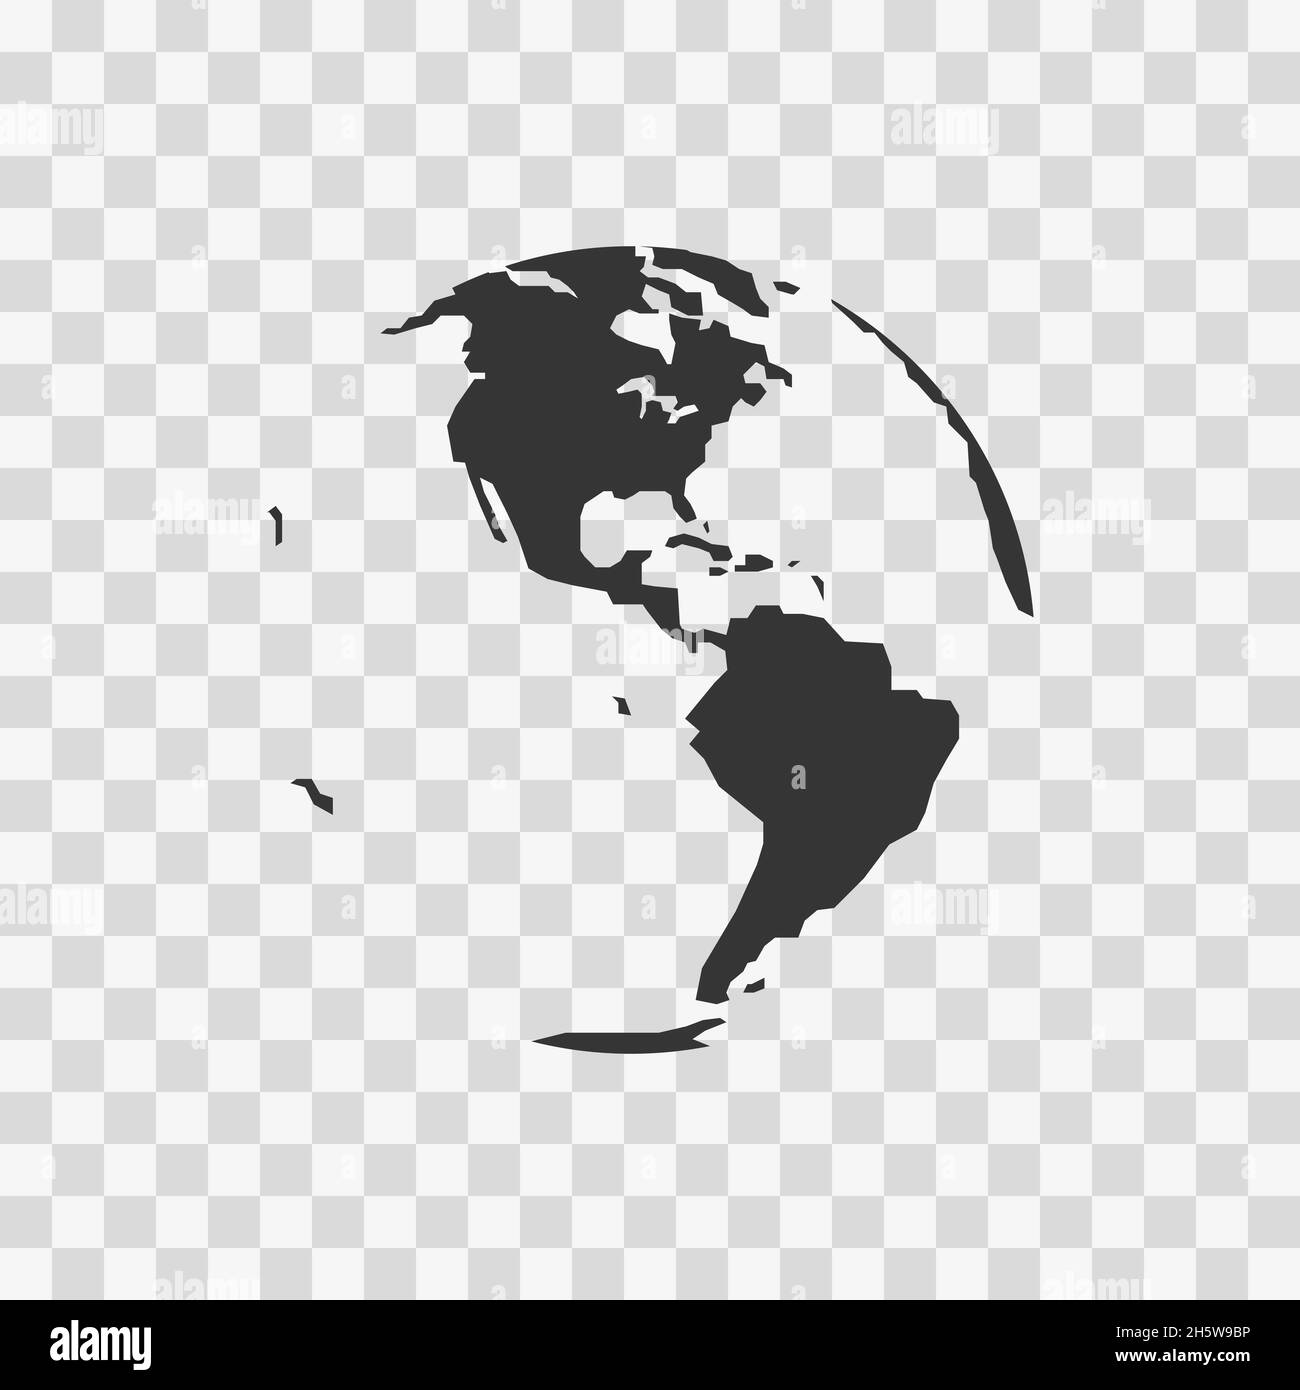 Globe Black Icon, Karte in flachem Stil auf transparentem Hintergrund. Vektor-isoliertes Zeichen Stock Vektor